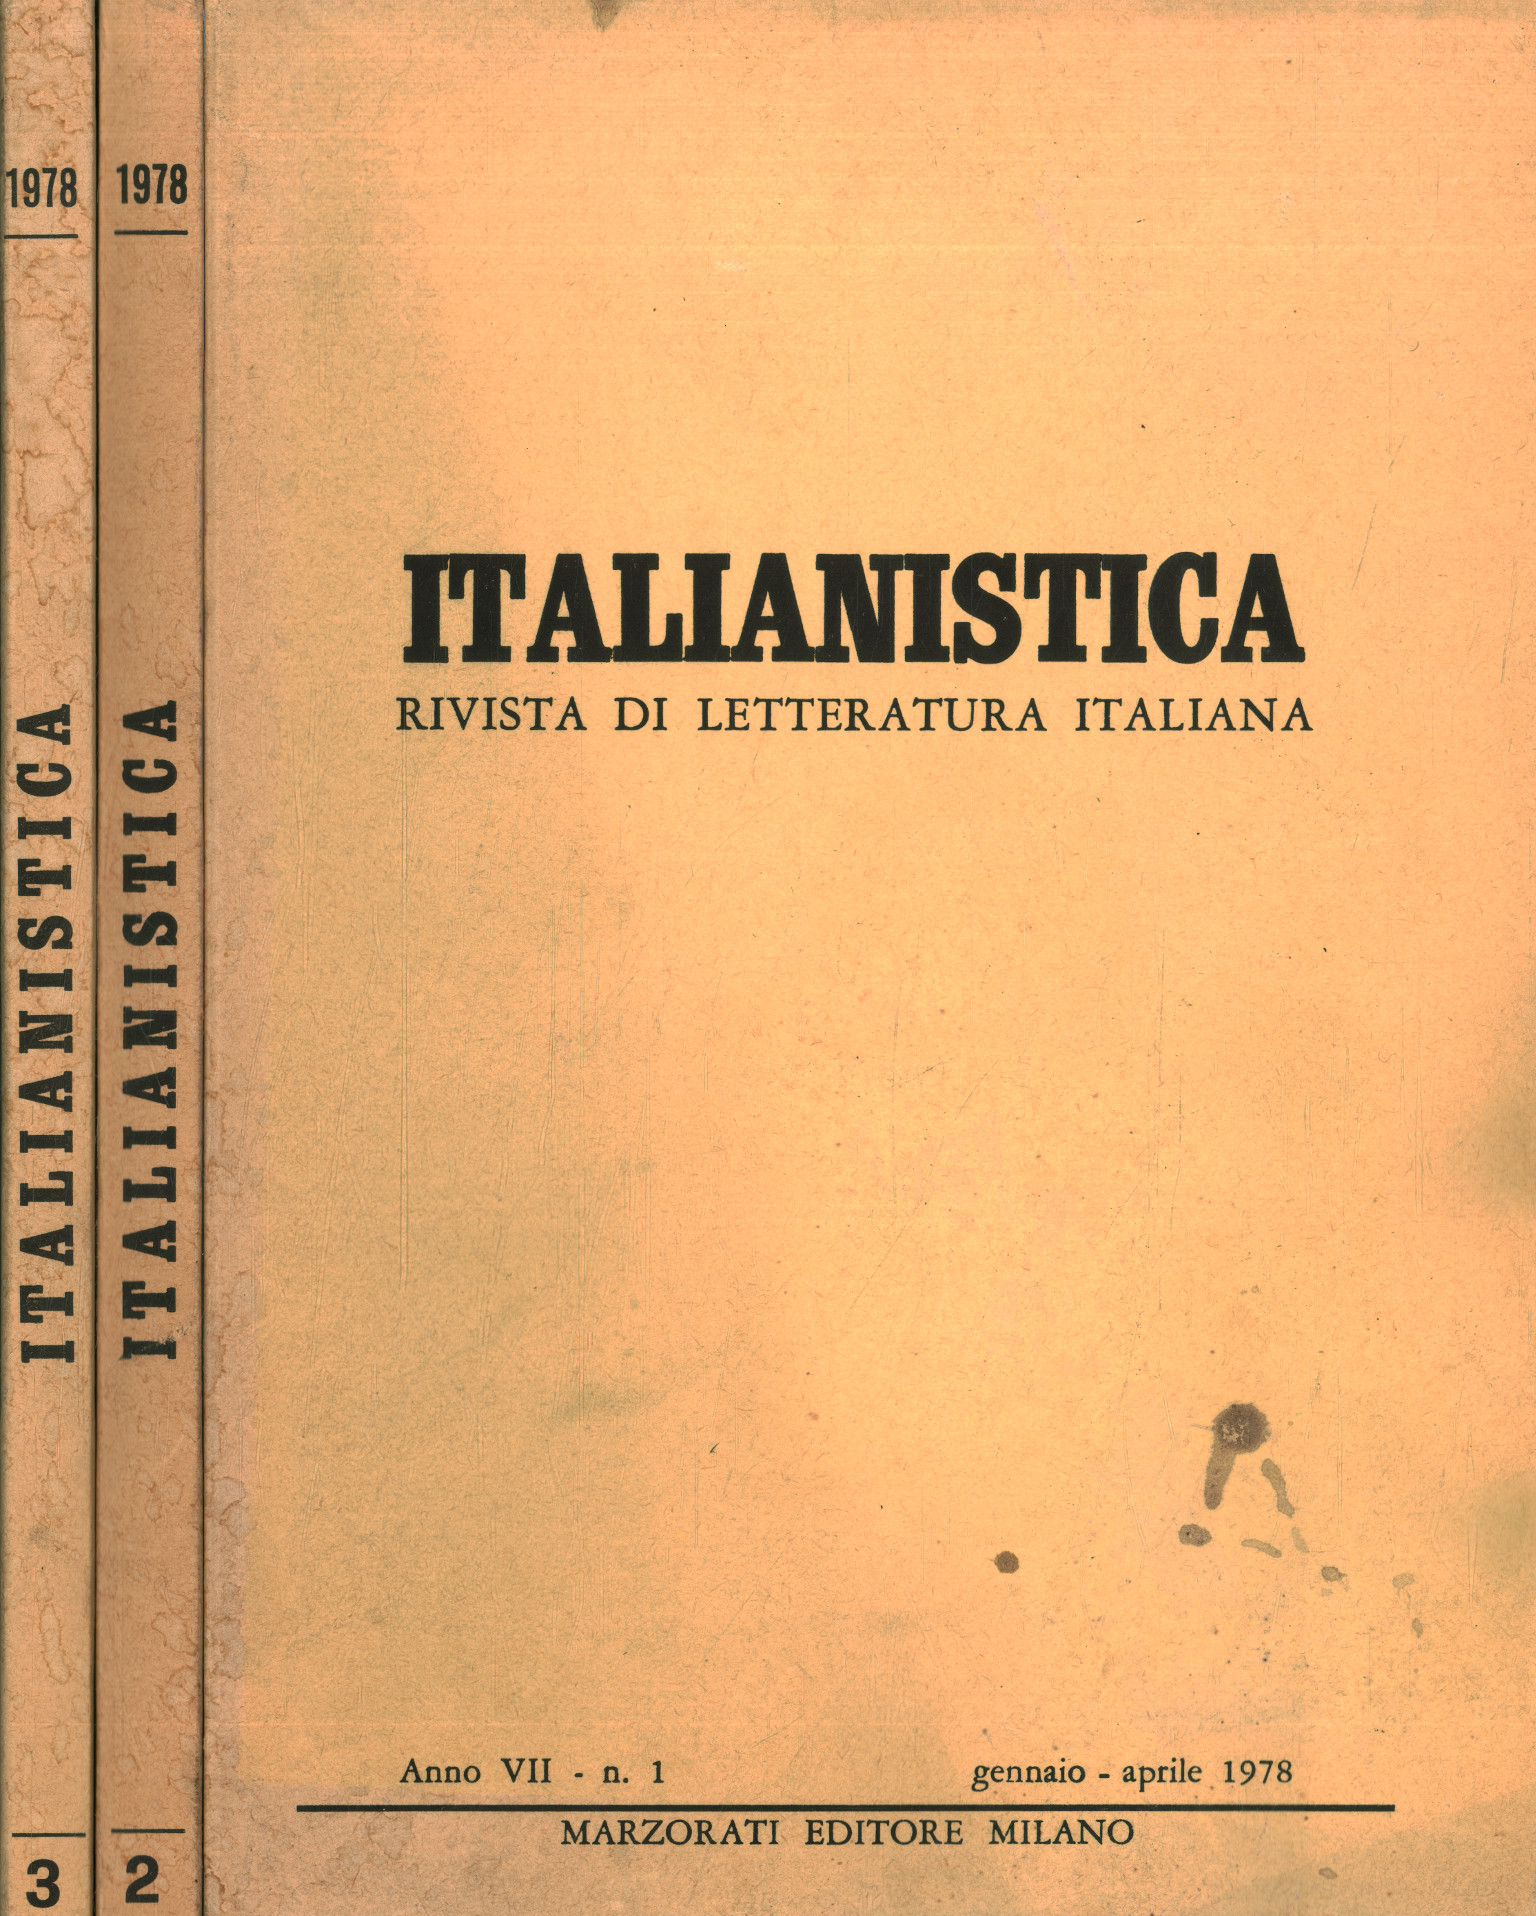 Italianistica: journal of Italian literature